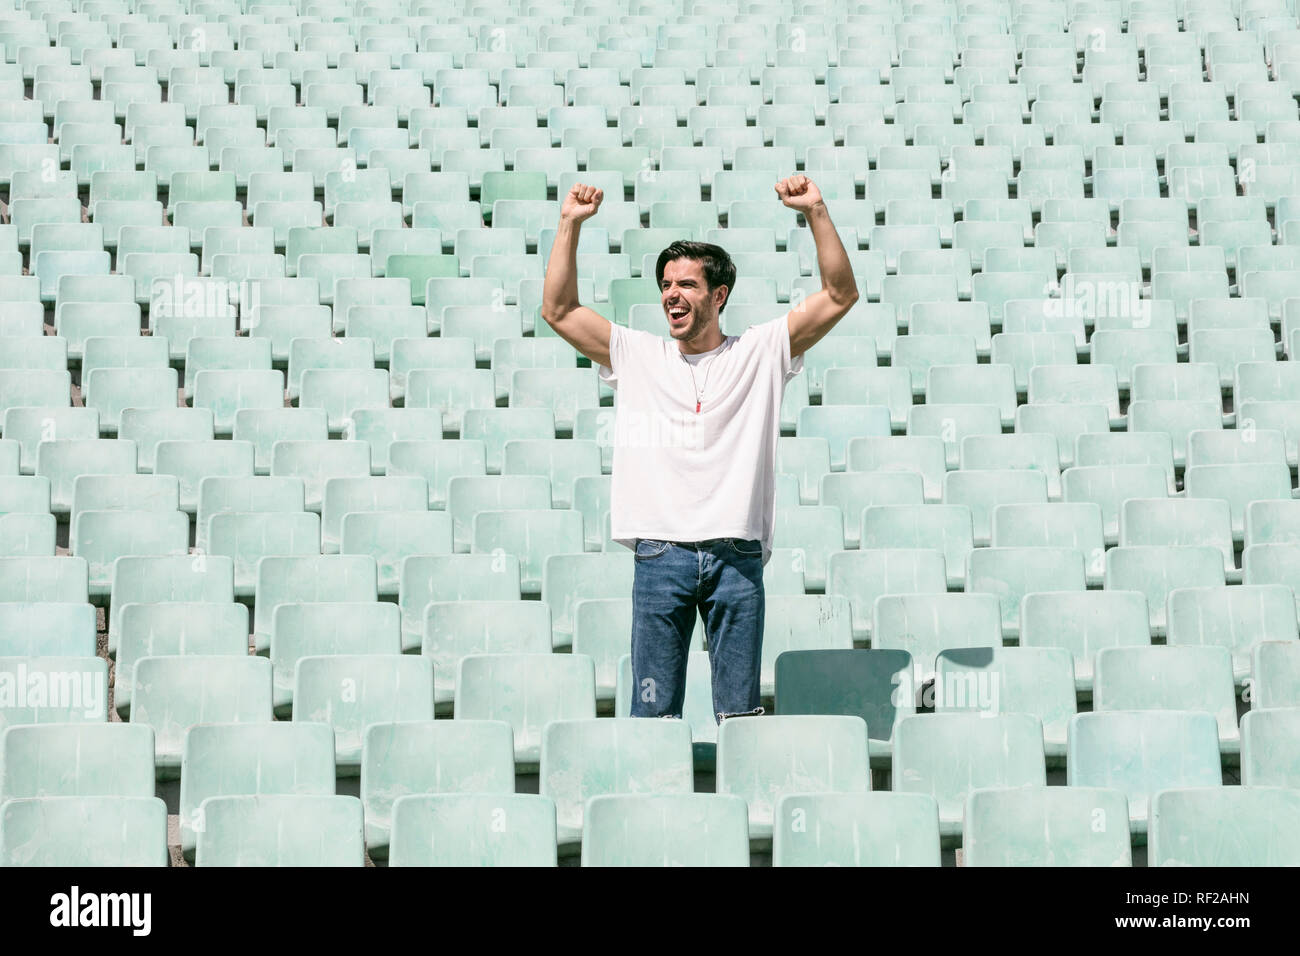 Un joven apuesto hombre permanece en un estadio vacío solos y celebra un triunfo y muestra una sensación de éxito Foto de stock